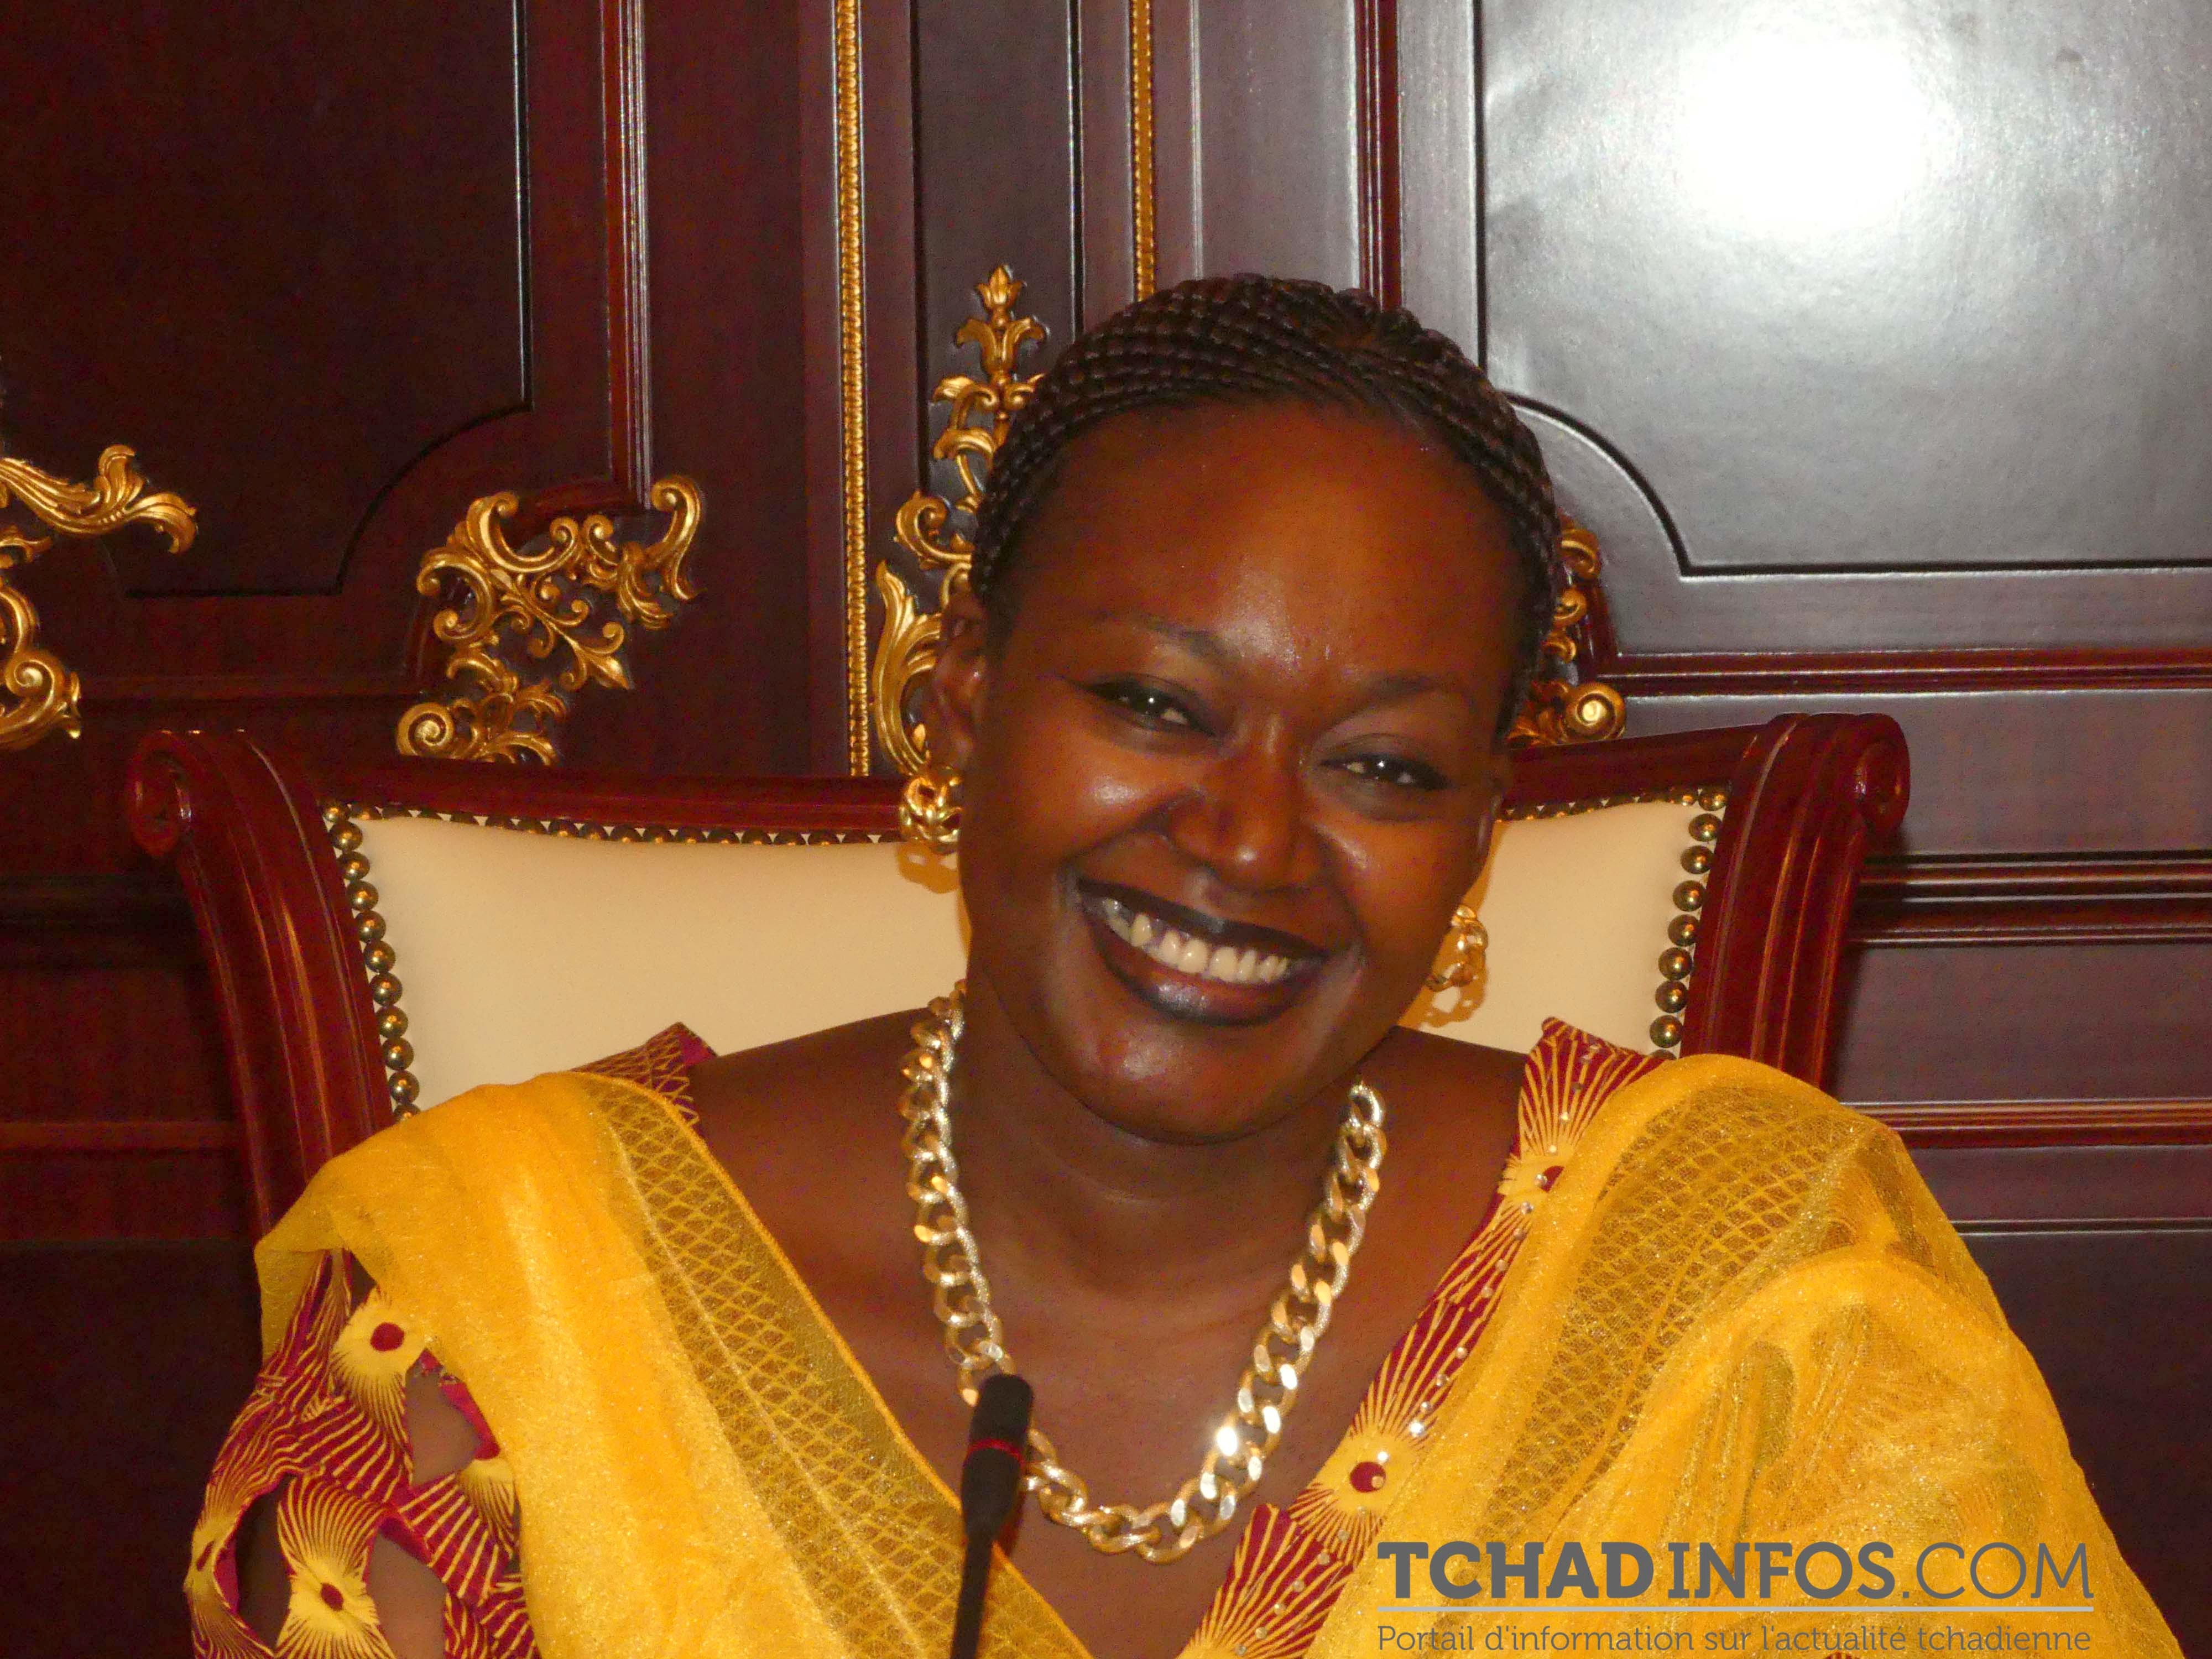 Tchad : « Nous pouvons estimer que les droits accordés aux femmes sont nombreux », Ndolenodji Alix